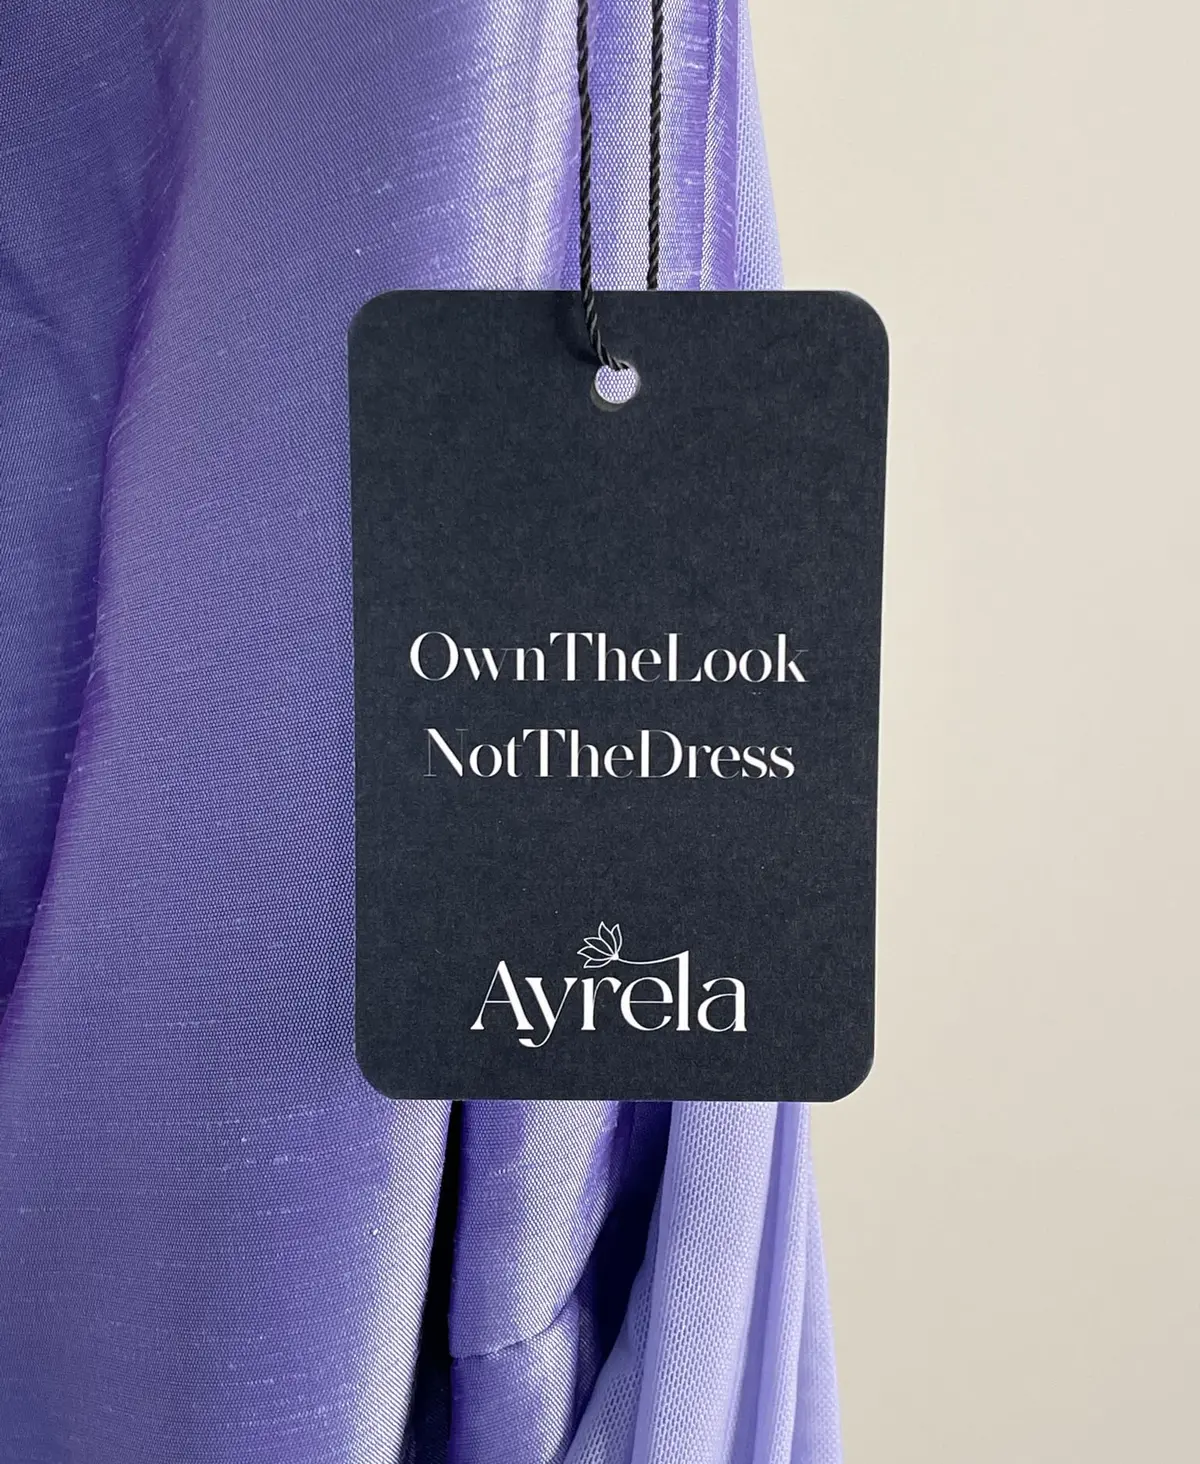 Ayrela_About Us_Mission_Sustainable_Rental_Fashion